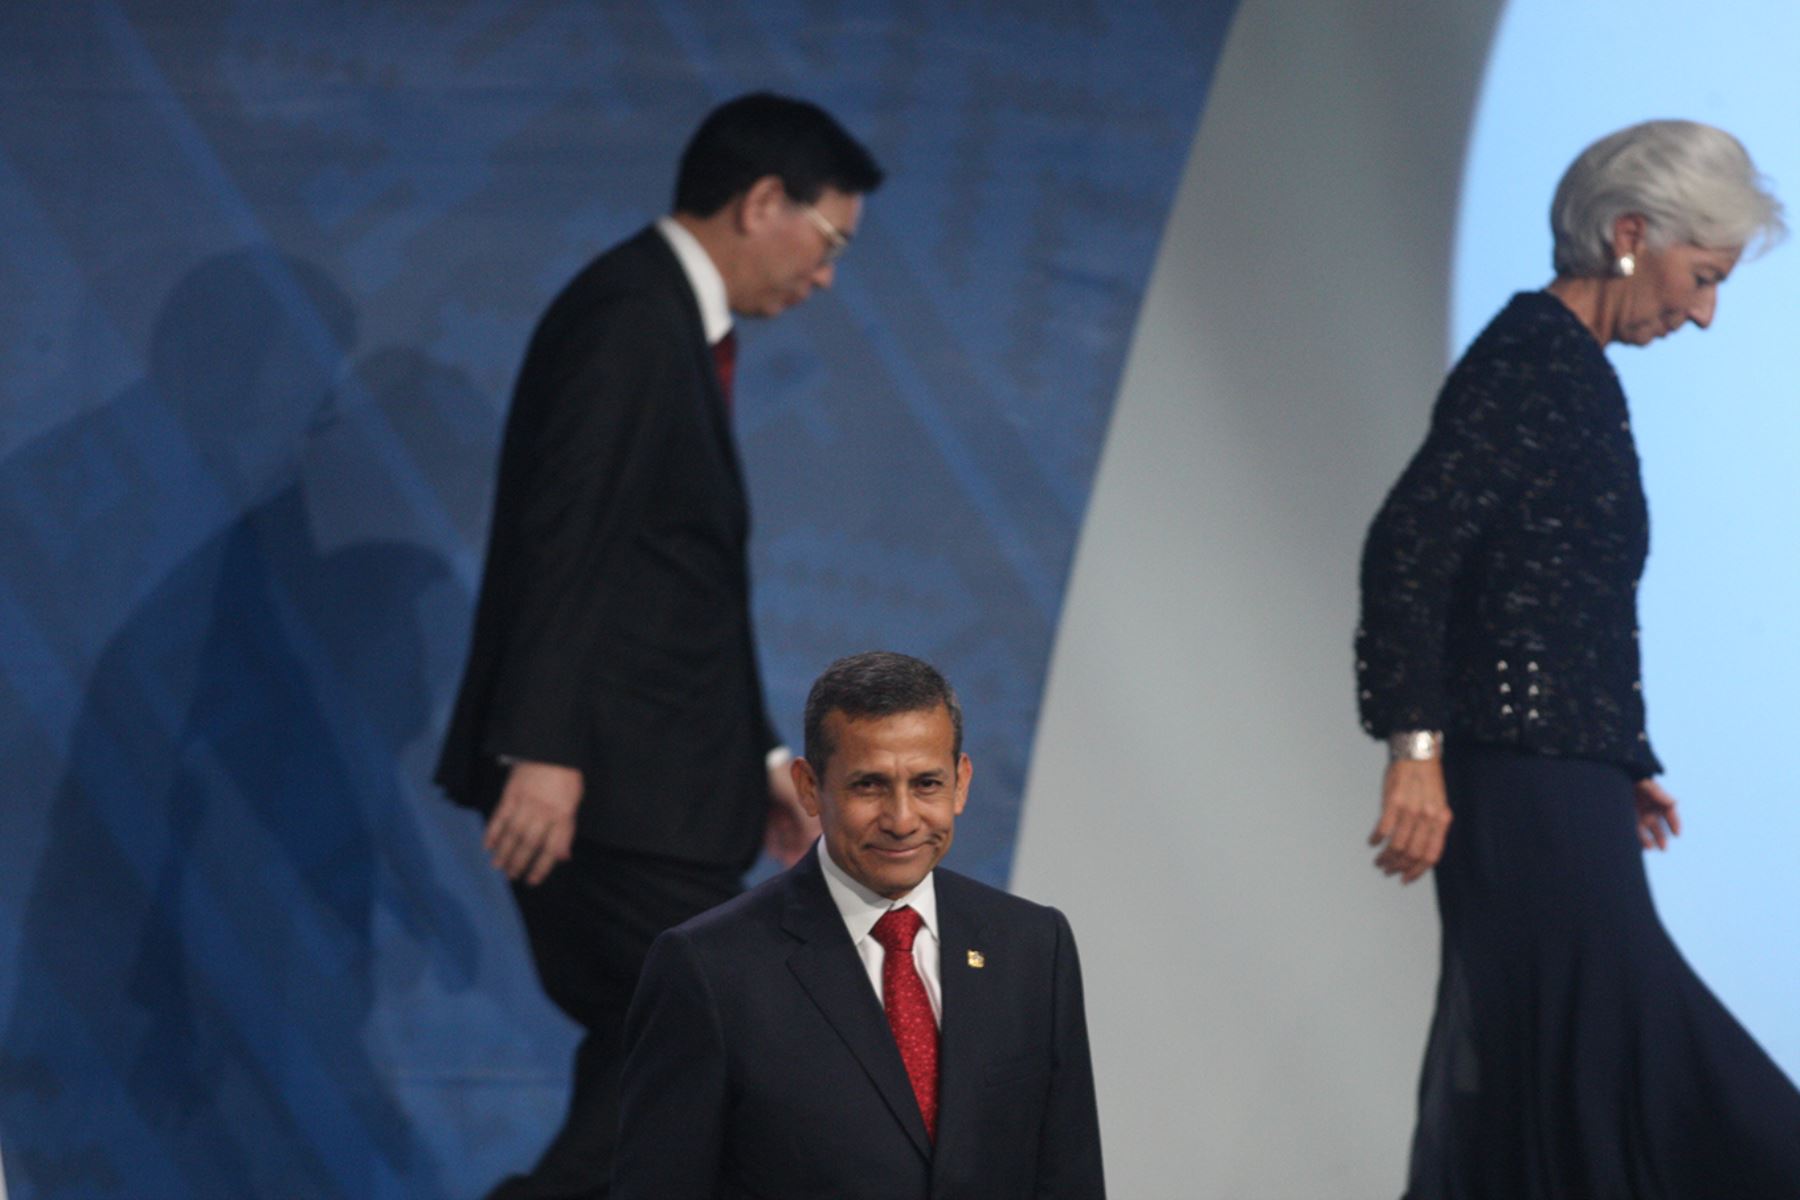 LIMA, PERÚ - OCTUBRE 09. El Presidente Ollanta Humala inauguró la sesión plenaria de las Reuniones Anuales.Foto: ANDINA/Juan Carlos Guzmán Negrini.